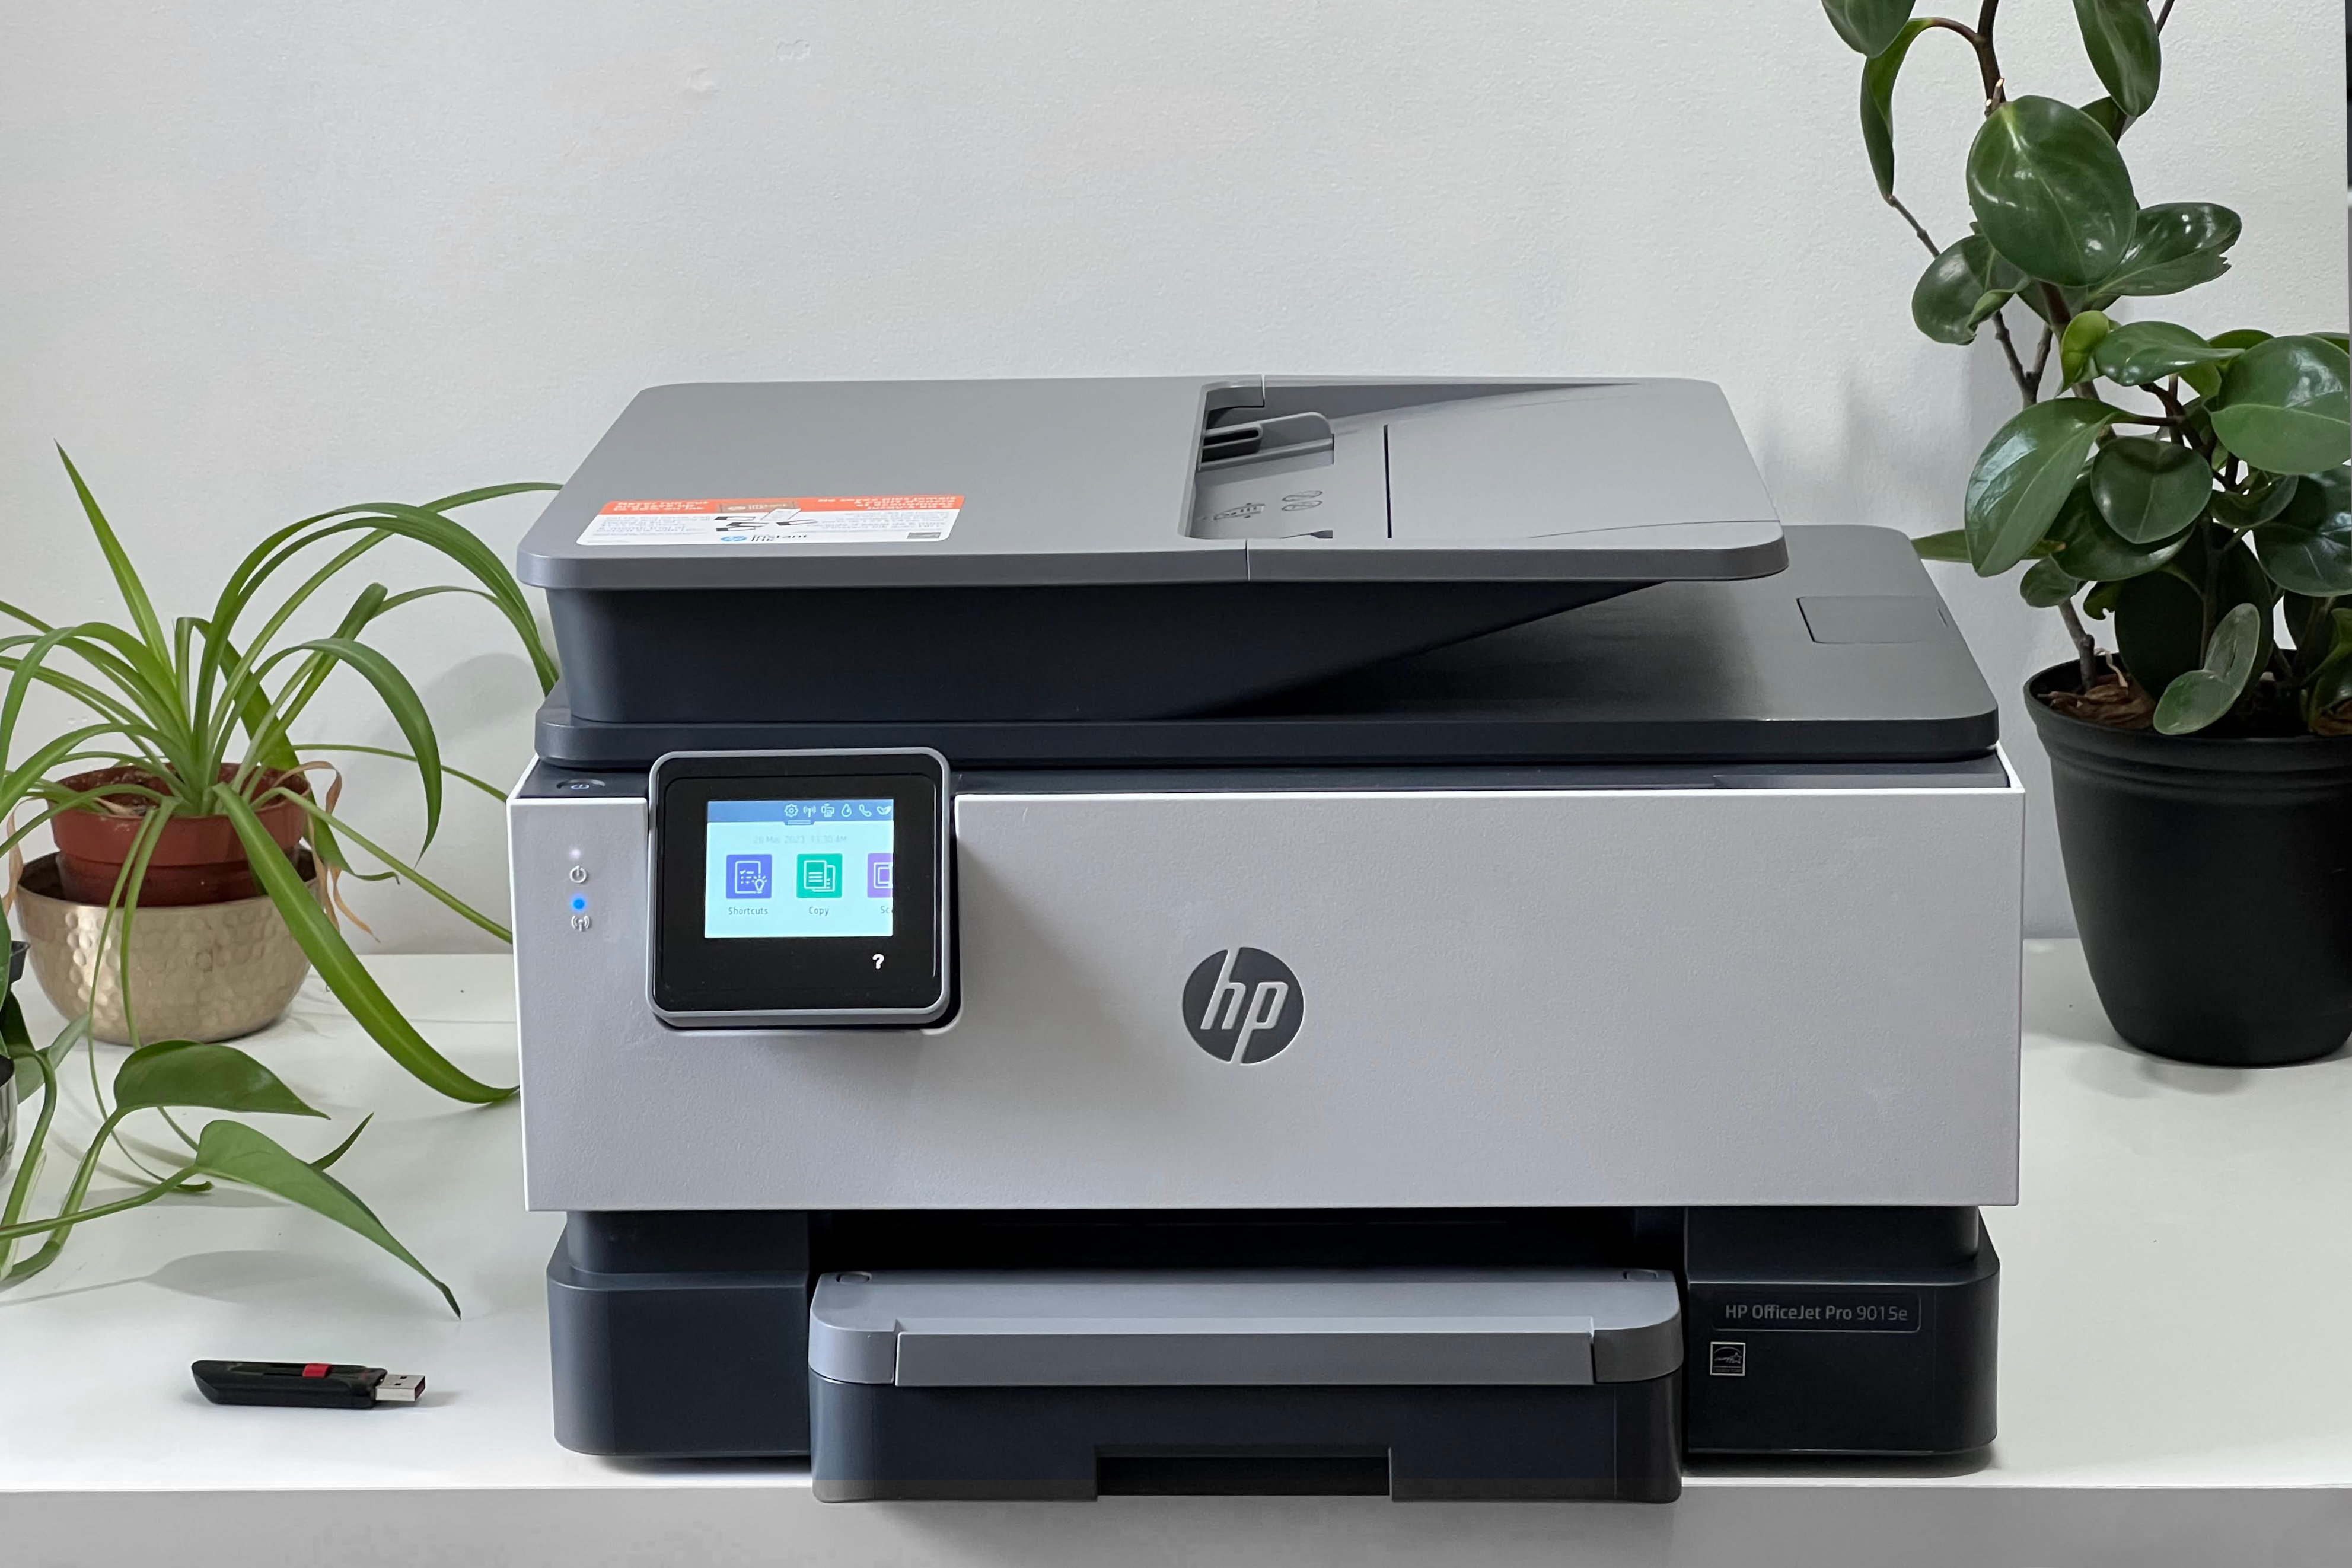 Принтер HP OfficeJet Pro 9015e «все в одном» стоит на белом столе с растениями и флэш-накопителем рядом с ним.